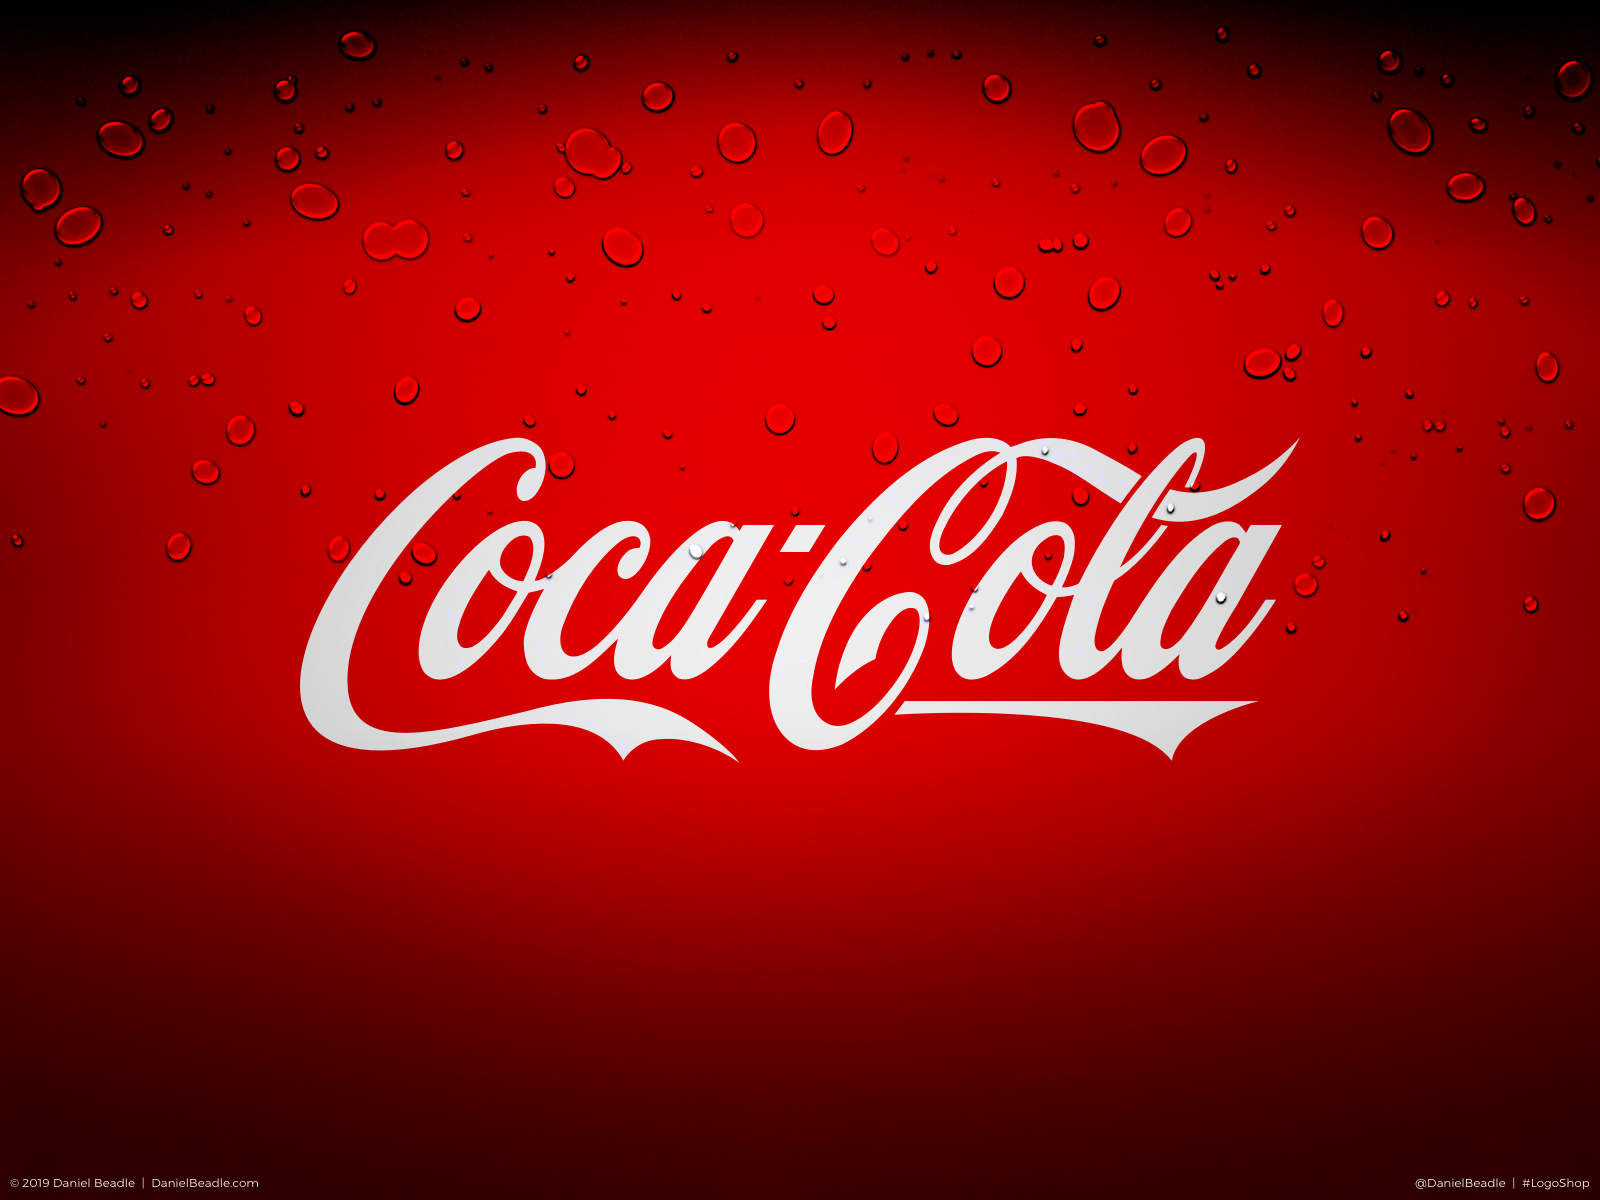 Coca Cola Logos / Logo Coca Cola, histoire, image de symbole et emblème